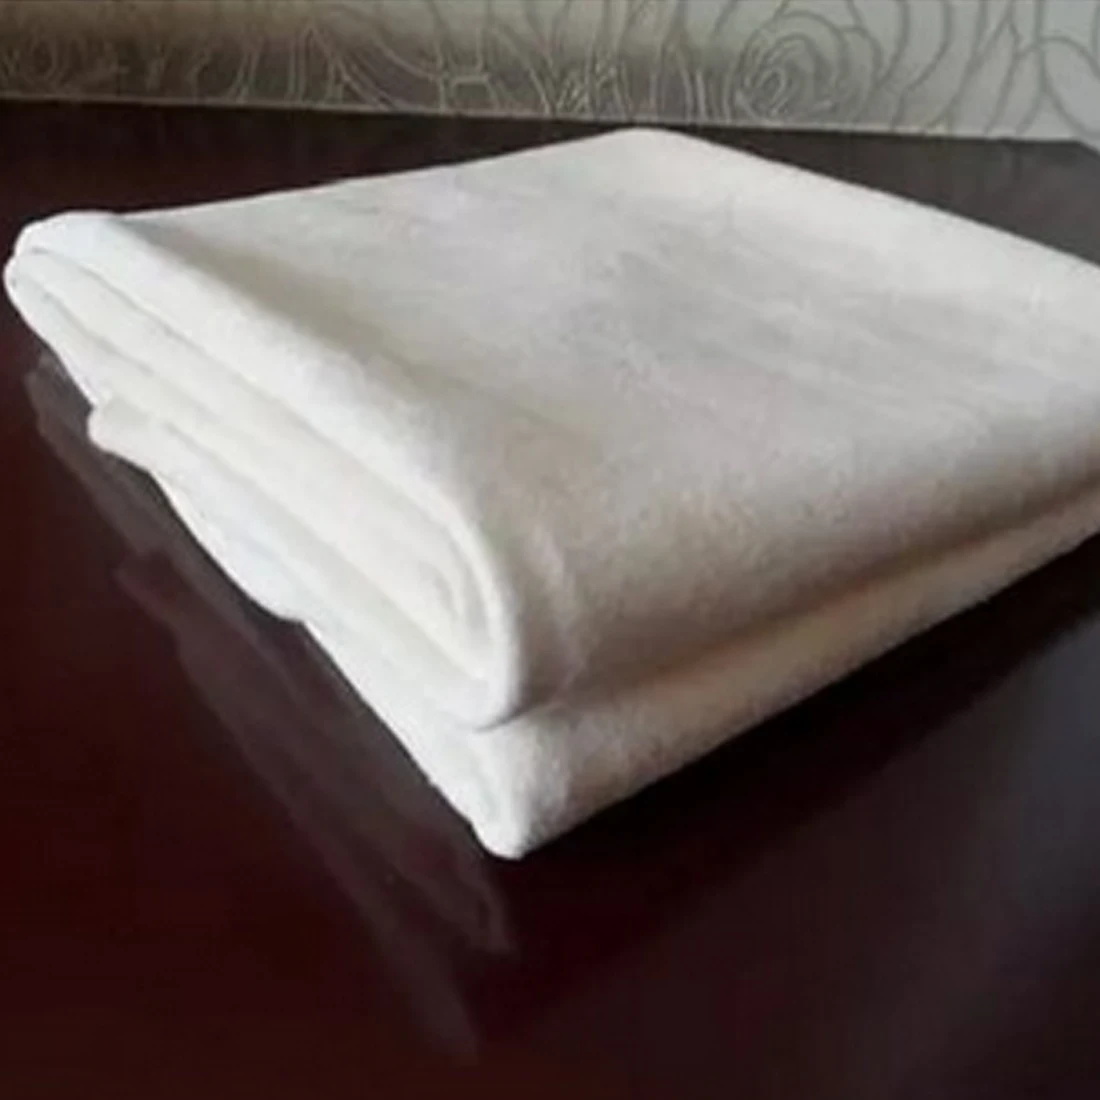 BU-Bauty автомобильное натуральное сушильное полотенце для мытья шамбов из натуральной кожи, губчатая ткань из овчины, впитывающее полотенце